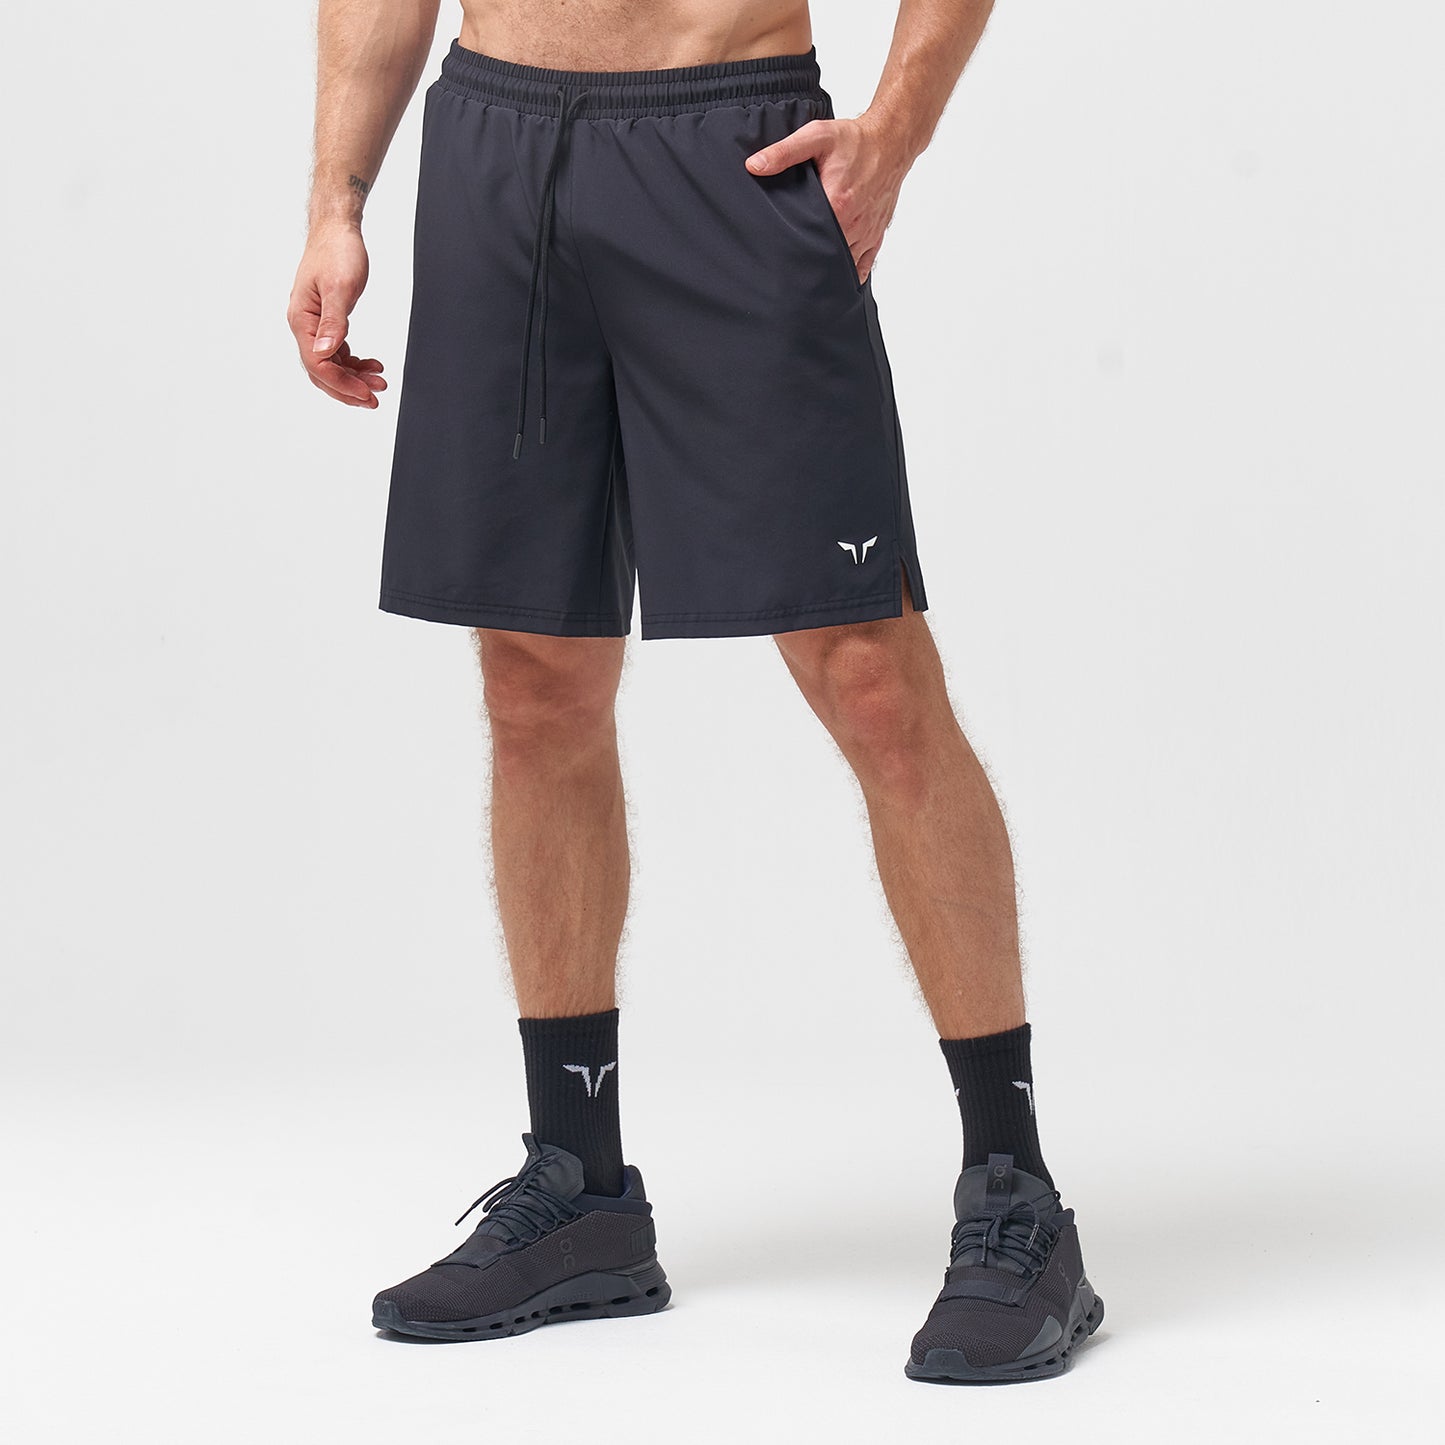 AE, Essential 9 Inch Shorts - Black, Gym Shorts Men